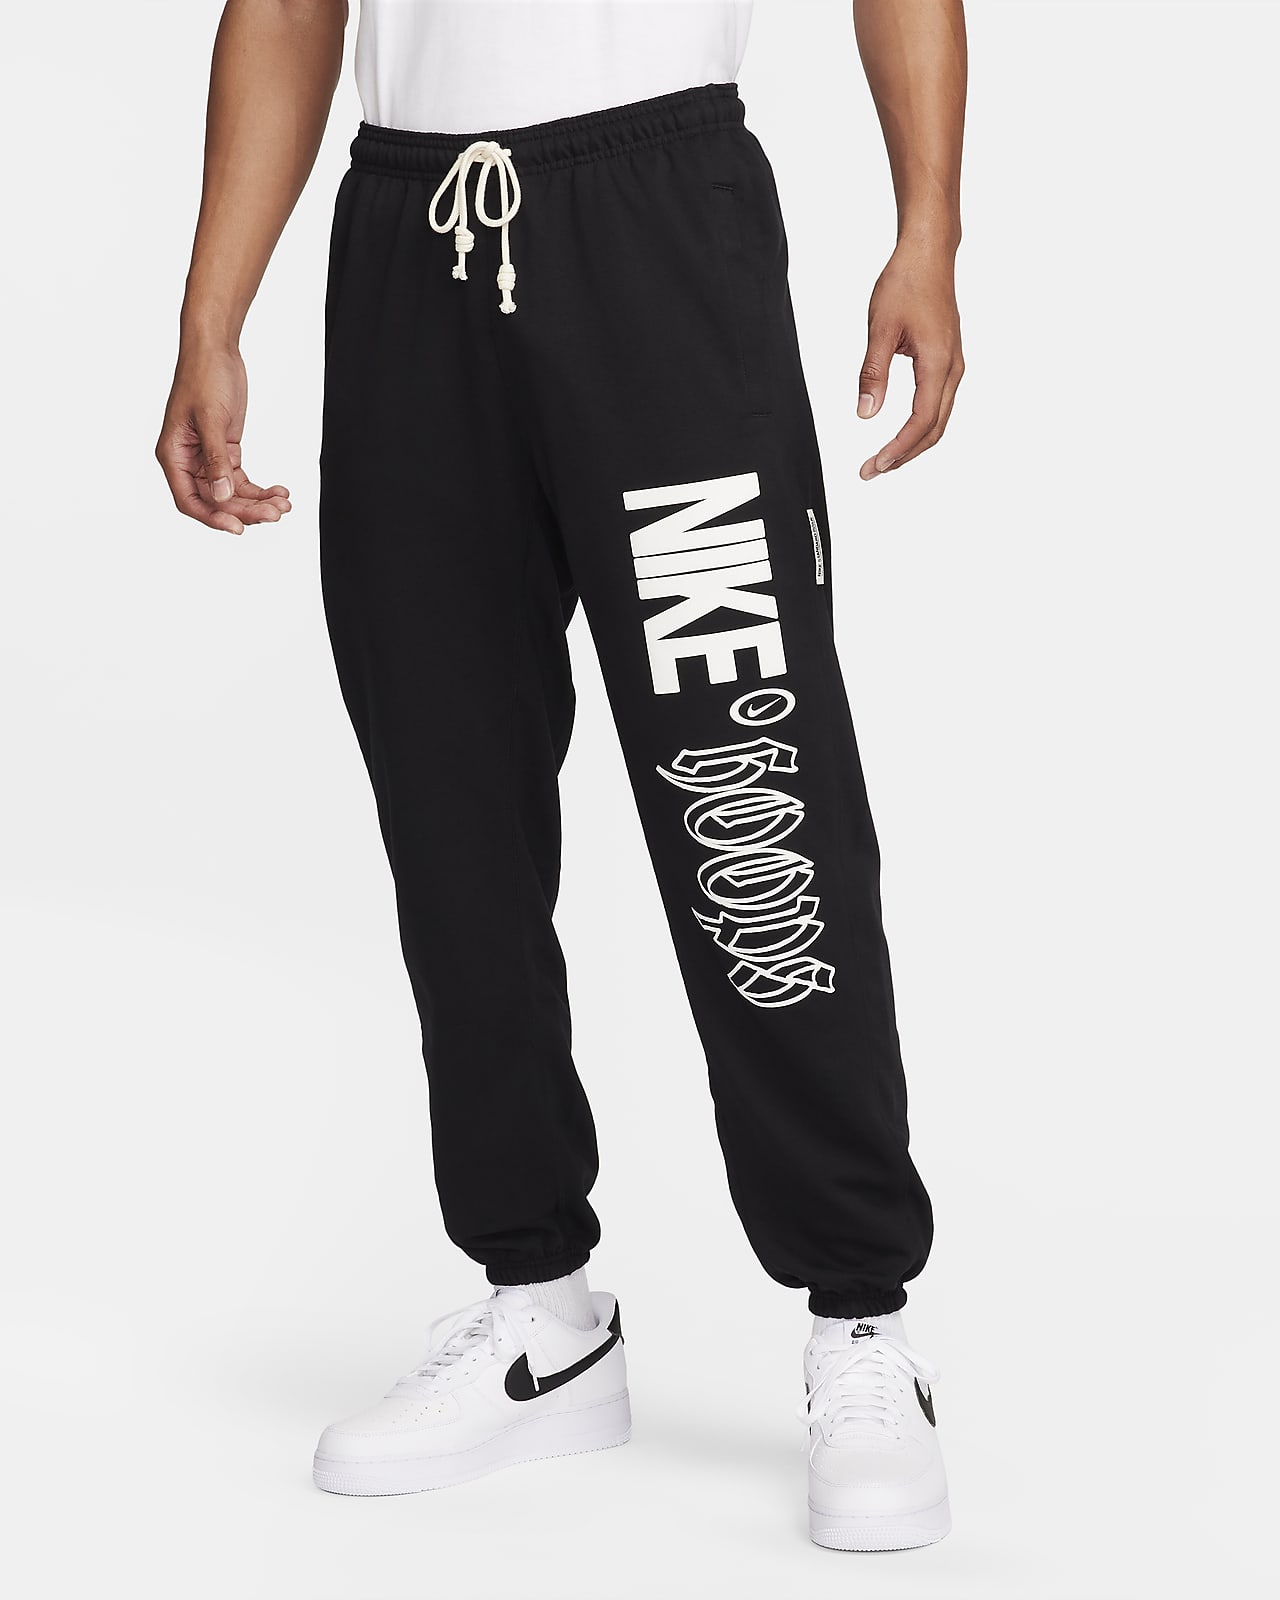 Ανδρικό παντελόνι μπάσκετ Dri-FIT Nike Standard Issue